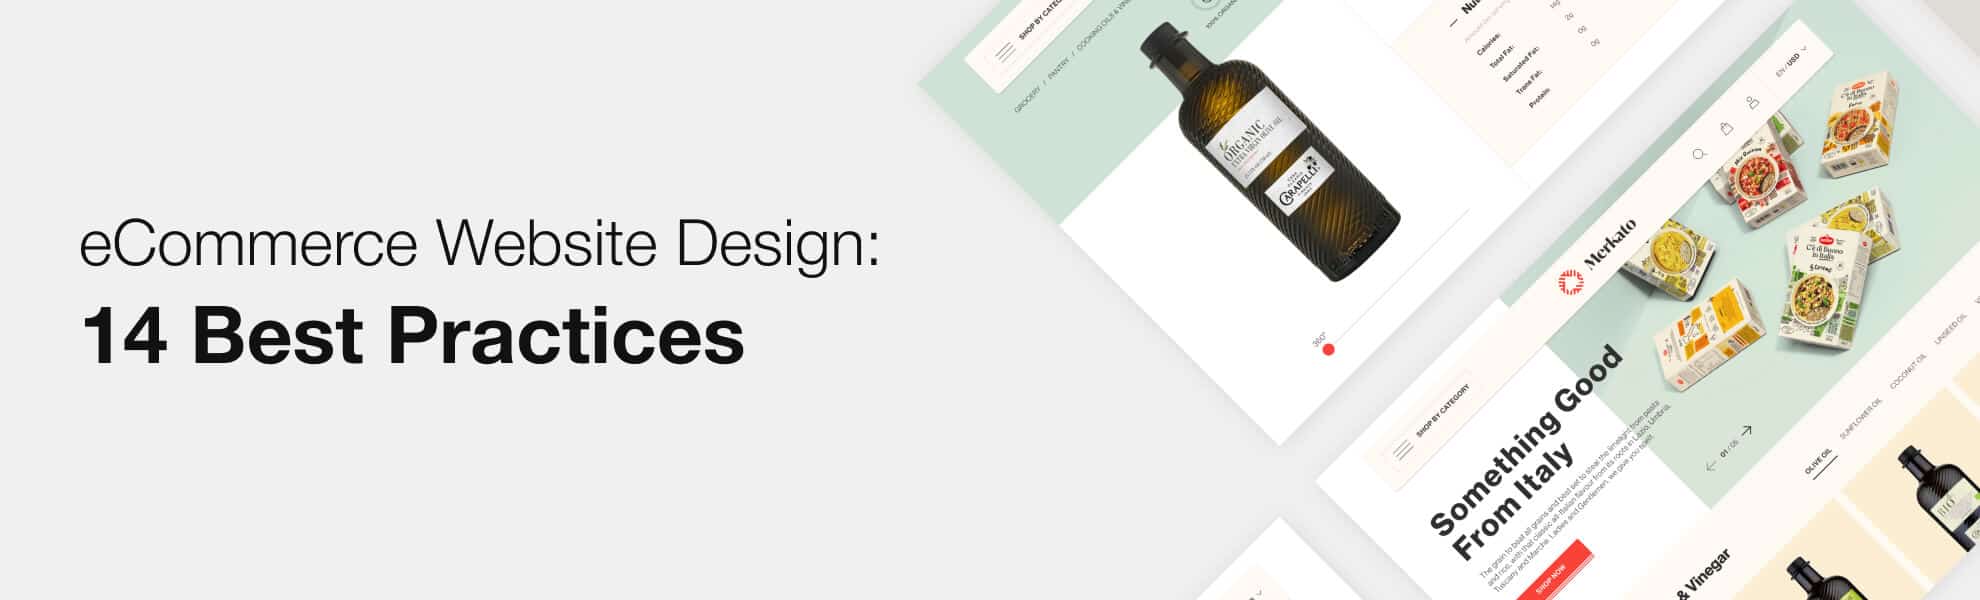 eCommerce Website Design: 14 Best Practices